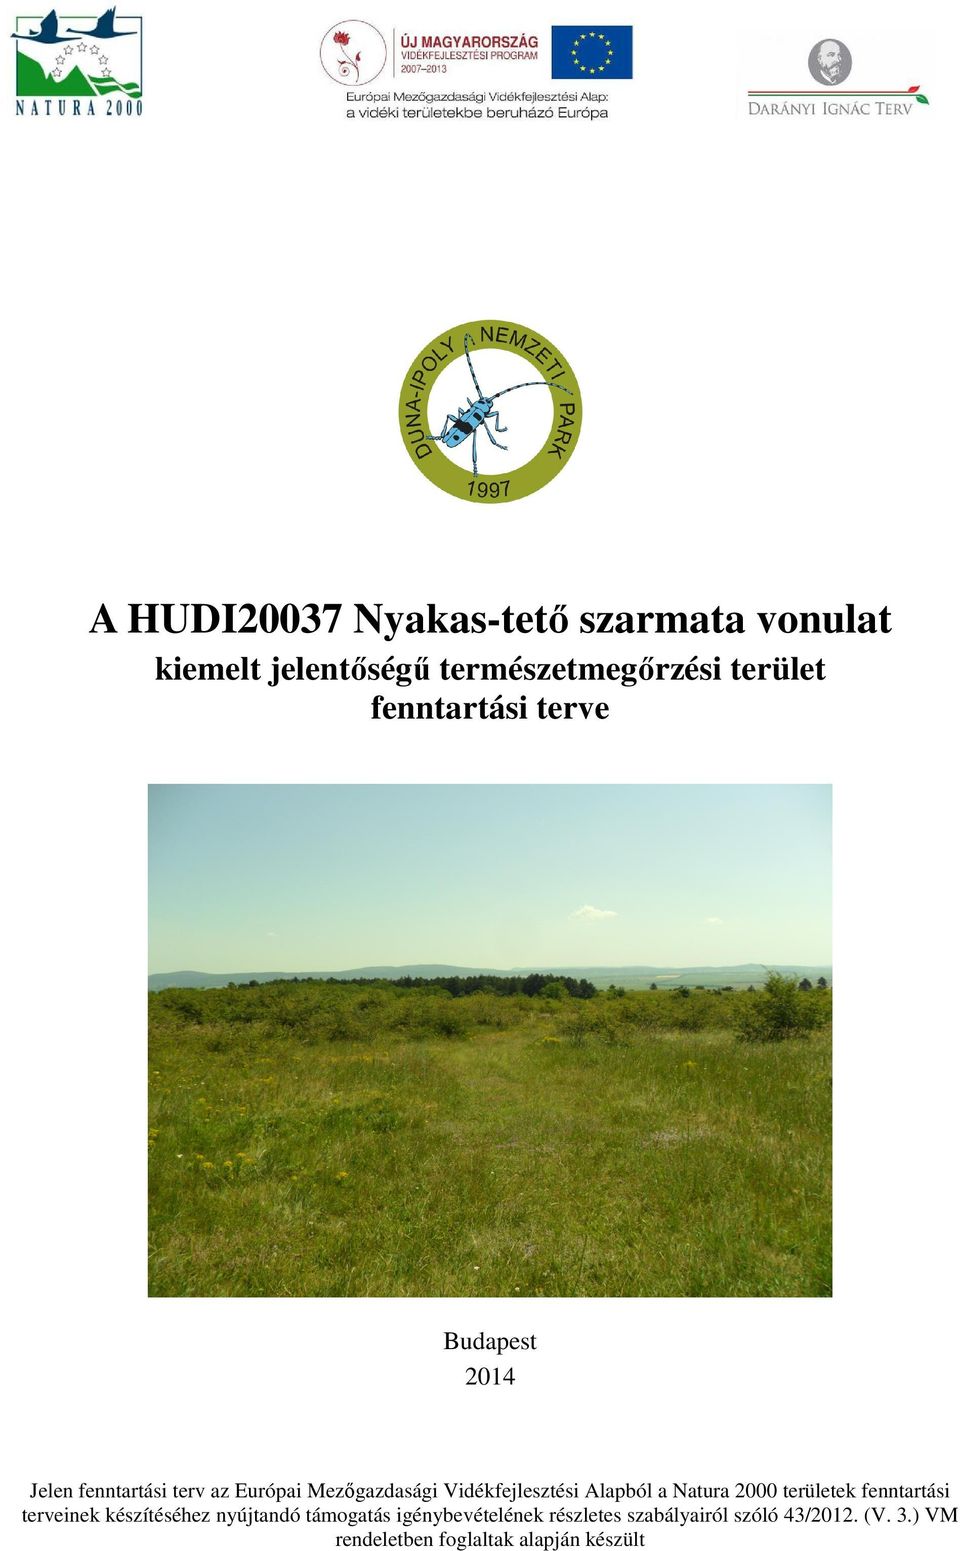 Vidékfejlesztési Alapból a Natura 2000 területek fenntartási terveinek készítéséhez nyújtandó